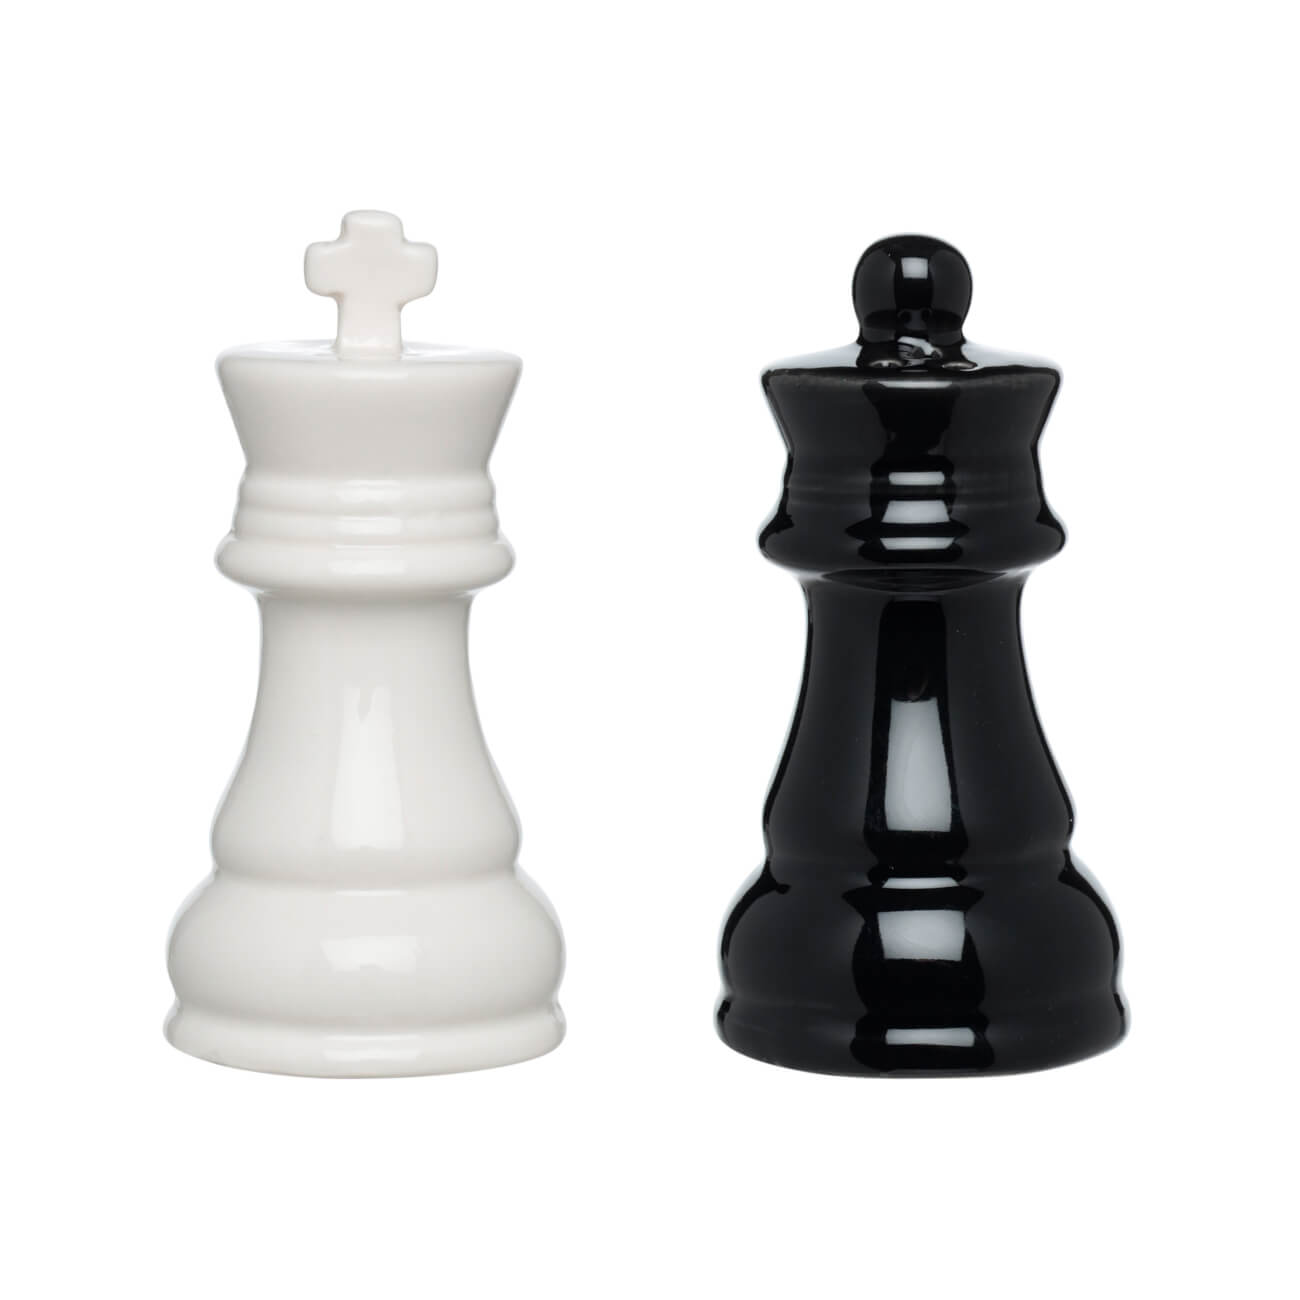 Набор для соли и перца, 9 см, фарфор P, черный/белый, Шахматы, Chess набор кухонных принадлежностей для выпечки 3 предмета силикон фиолетовый y4 3042